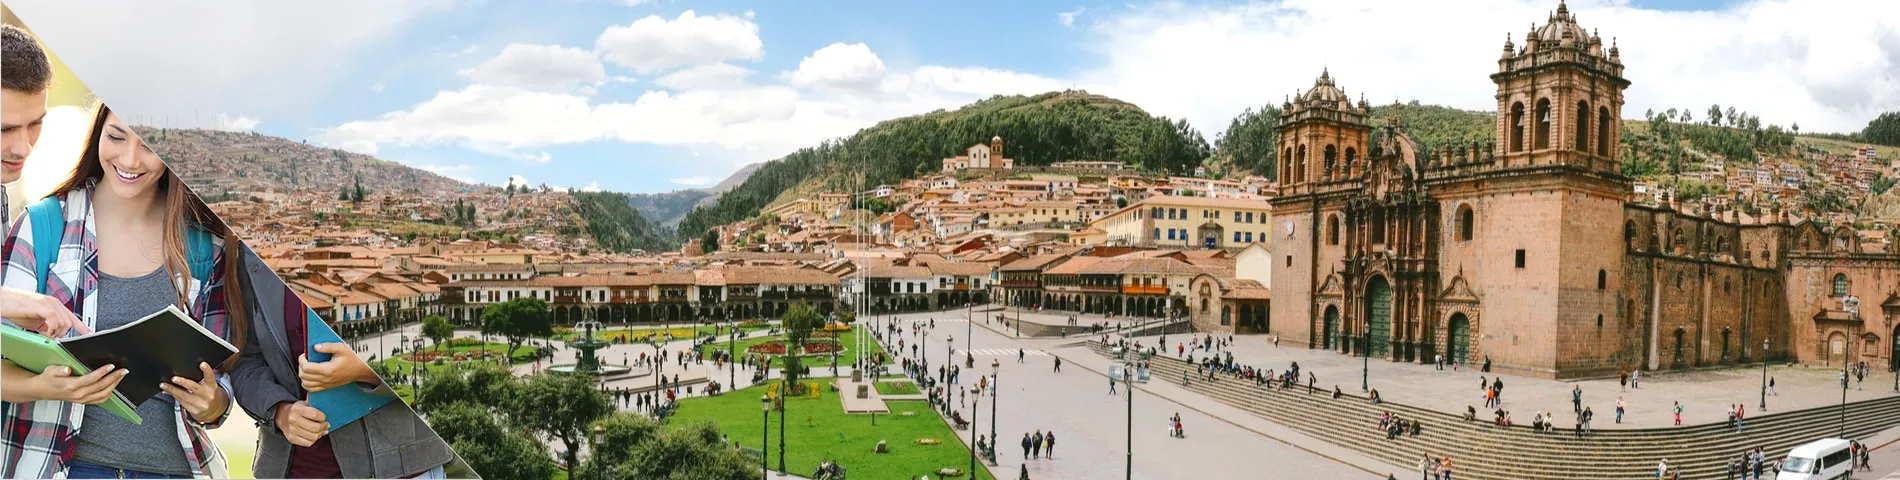 Cuzco - Aula itinerante